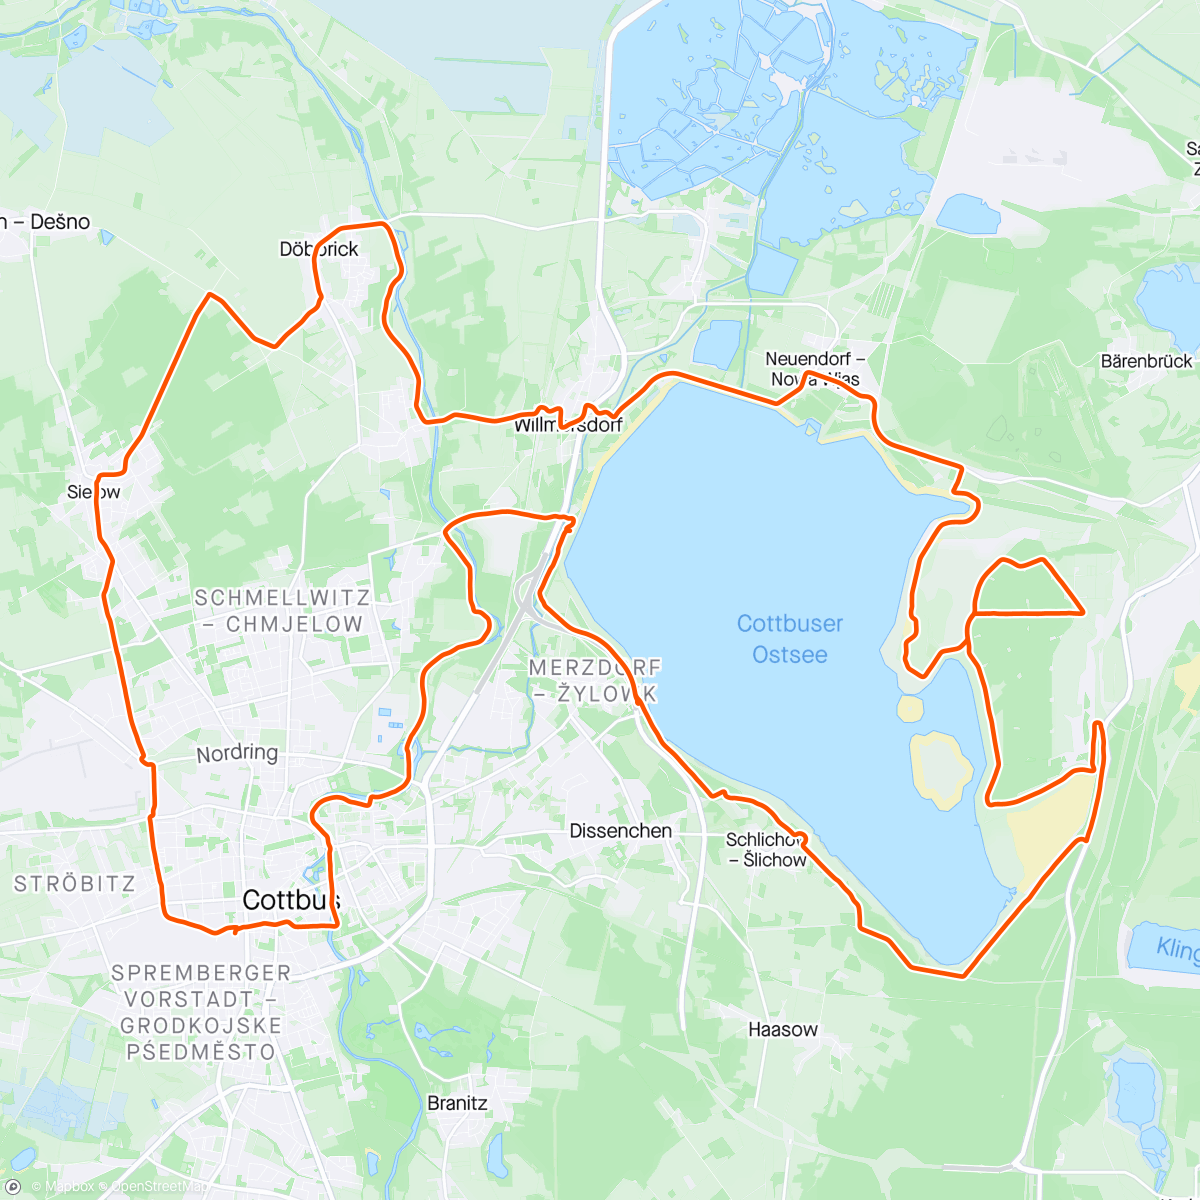 アクティビティ「zweite Fahrt dieses Jahr & new bike day」の地図